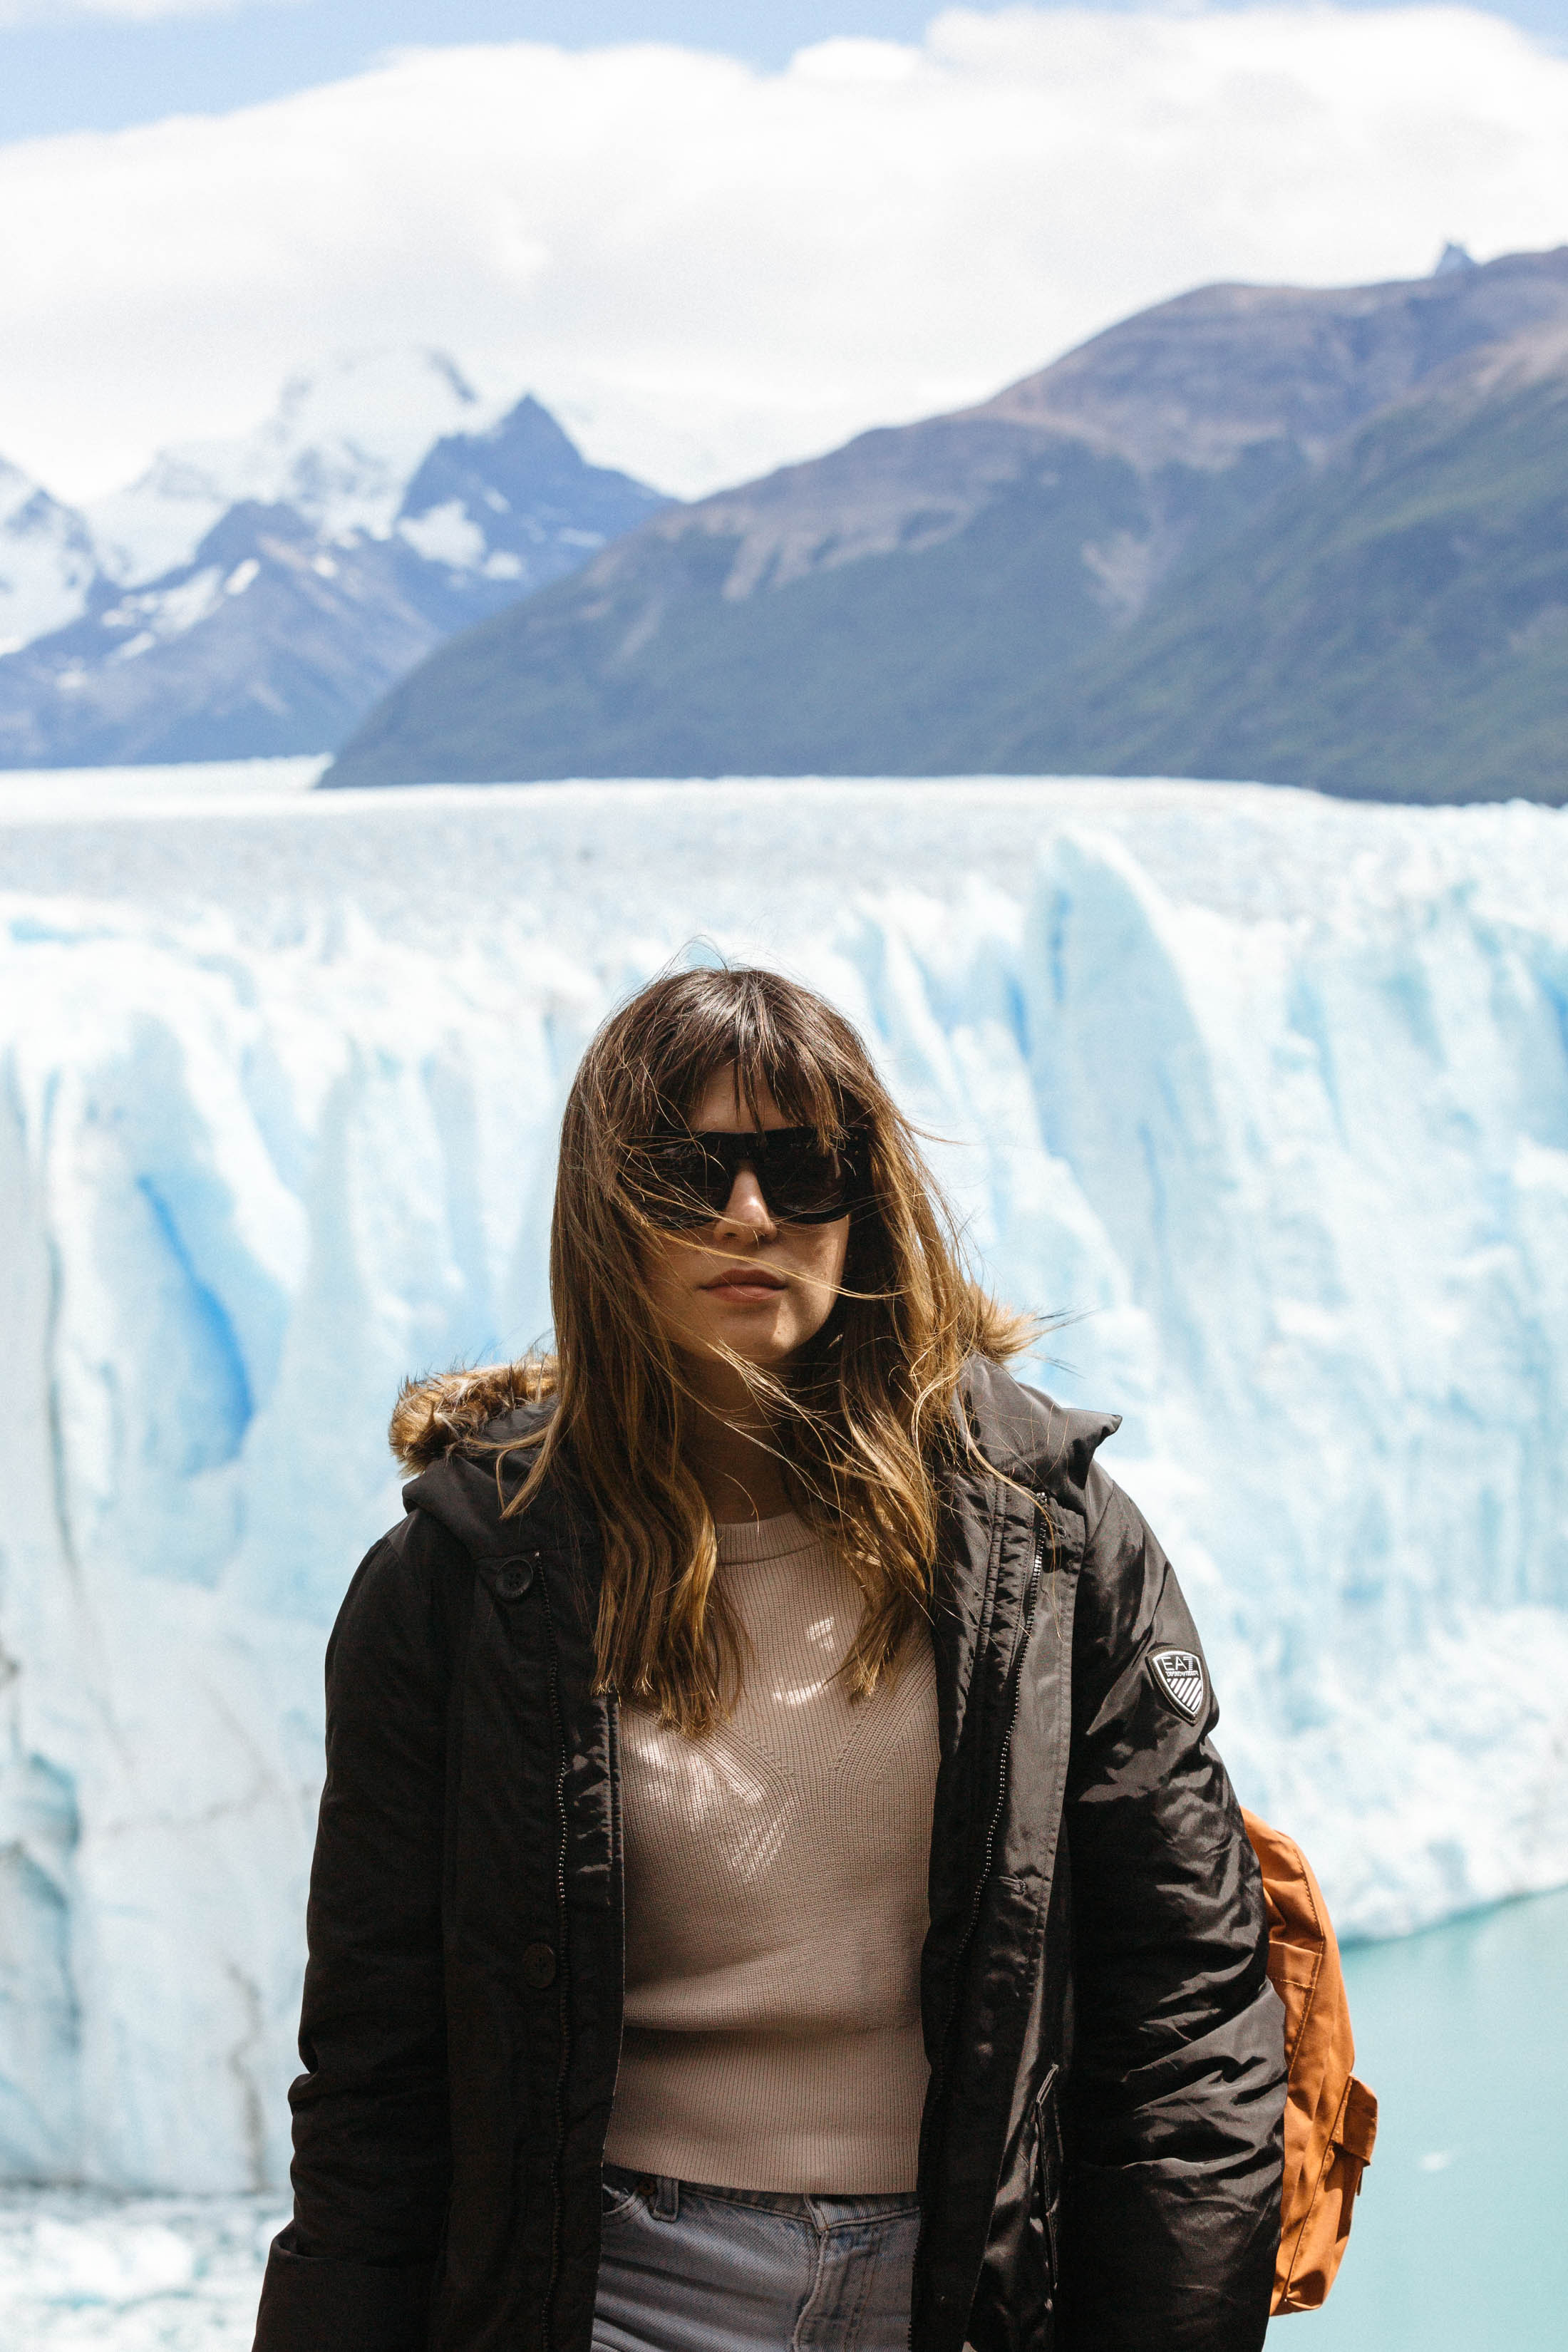 Maristella at the Perito Moreno glacier